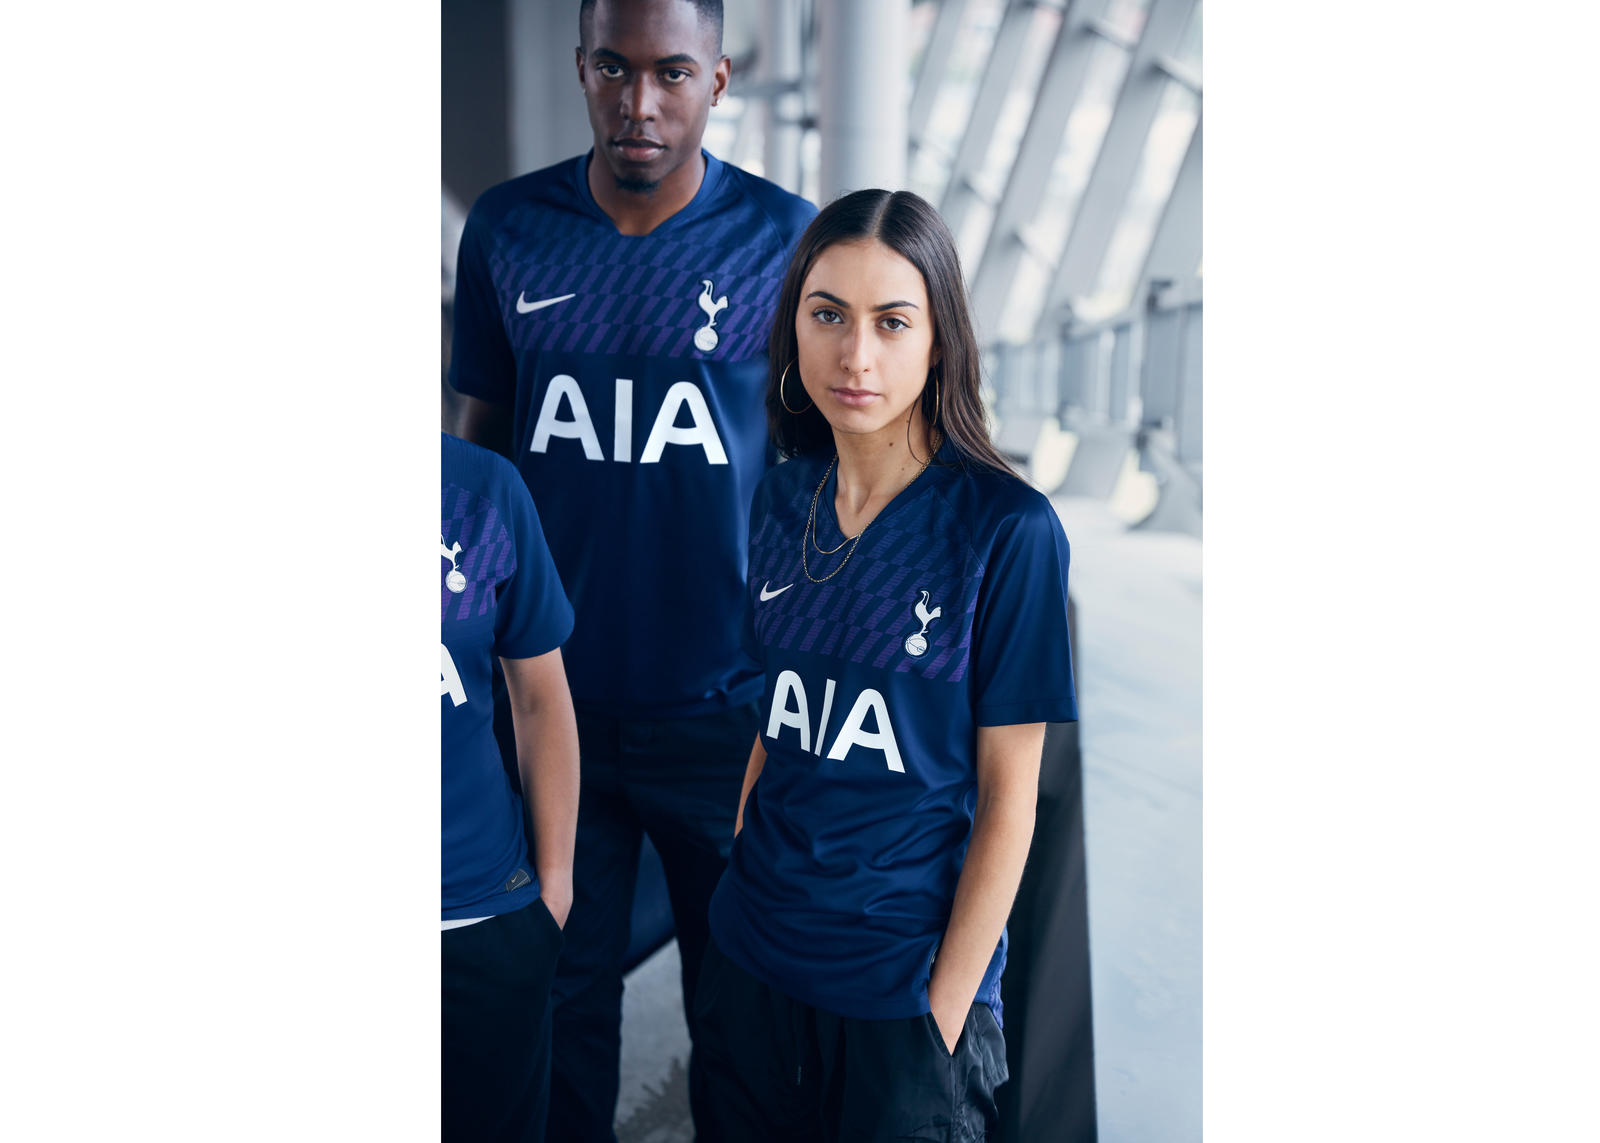 Tottenham Kit Leak: Images of New Away Shirt for 2019/2020 Season Shared  Online - Sports Illustrated